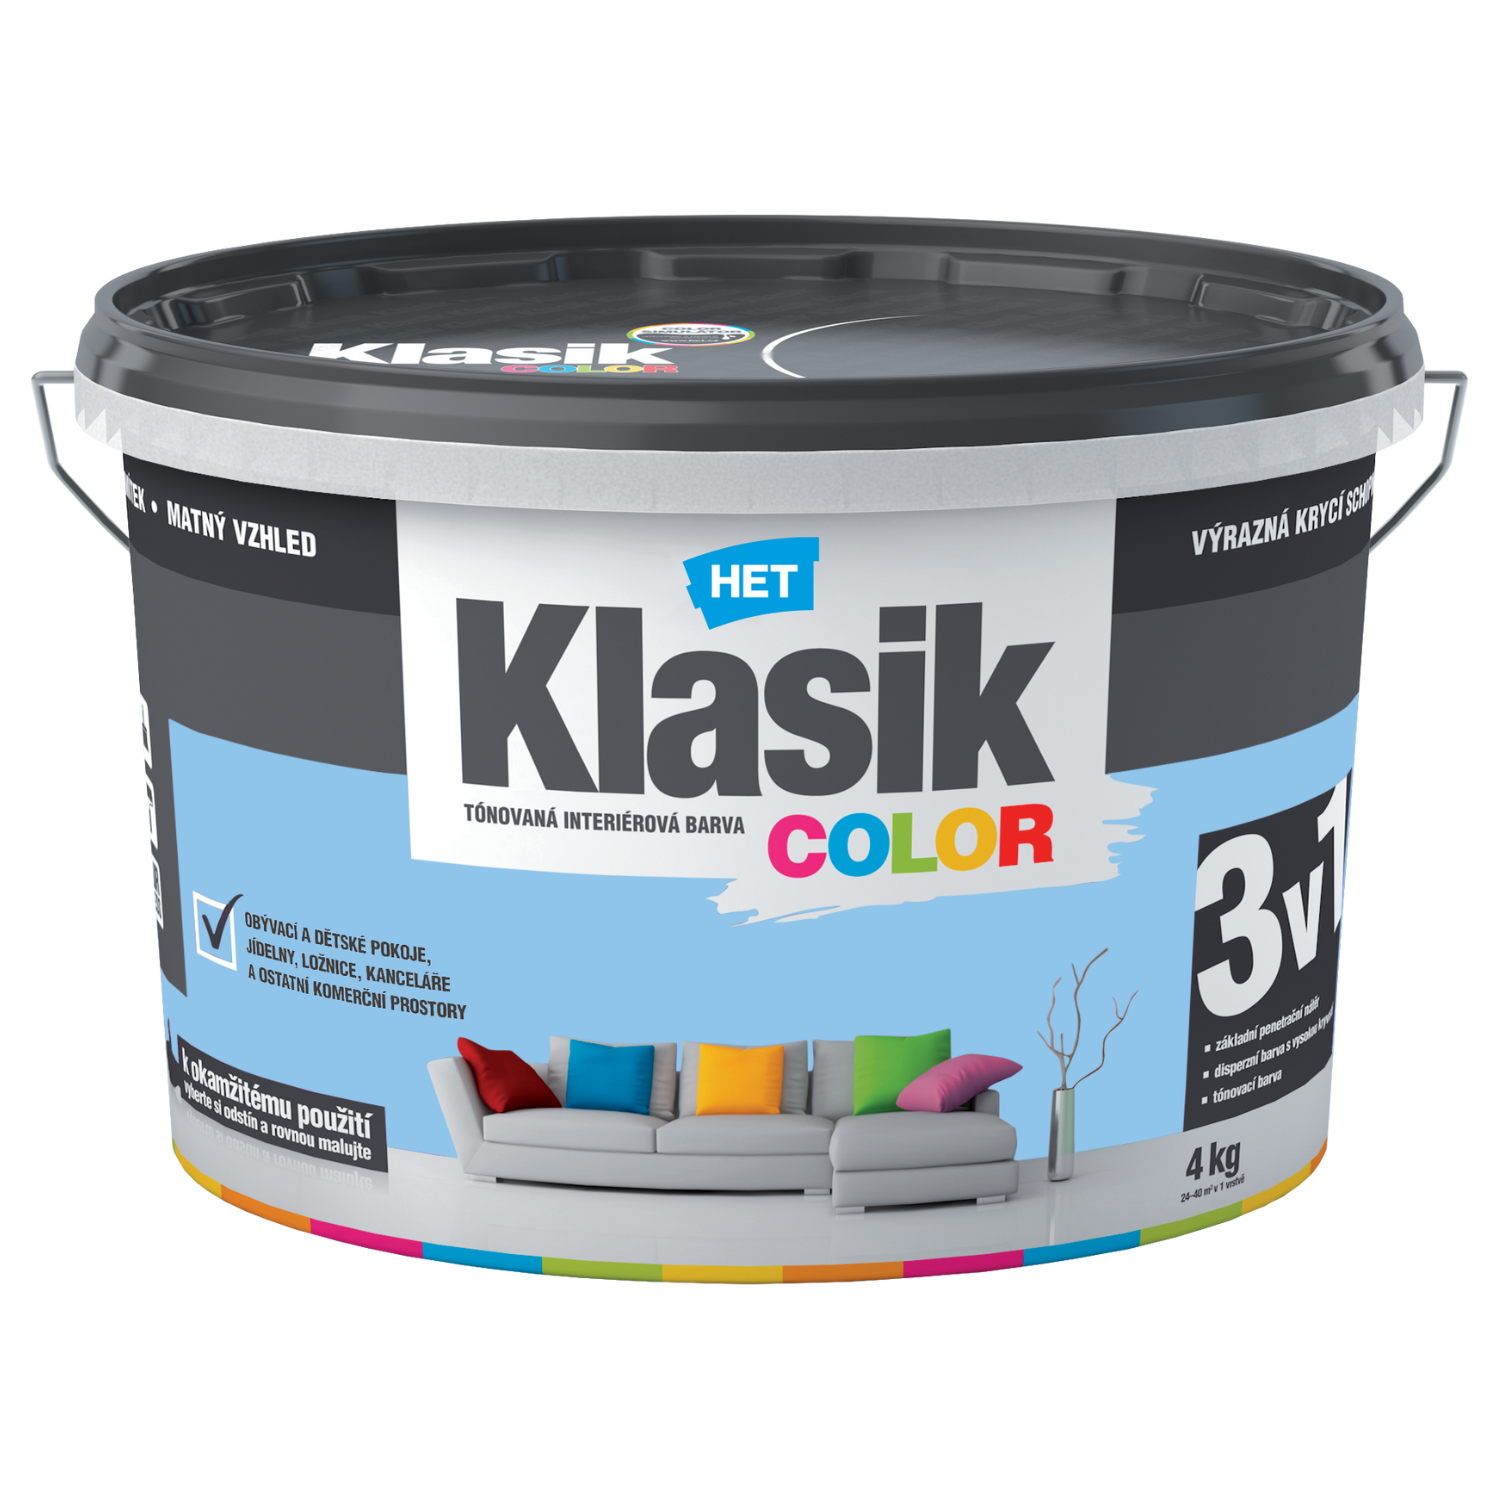 HET Klasik COLOR tónovaná interiérová akrylátová disperzná oteruvzdorná farba 4 kg, KC0347 - fialový orgovánový